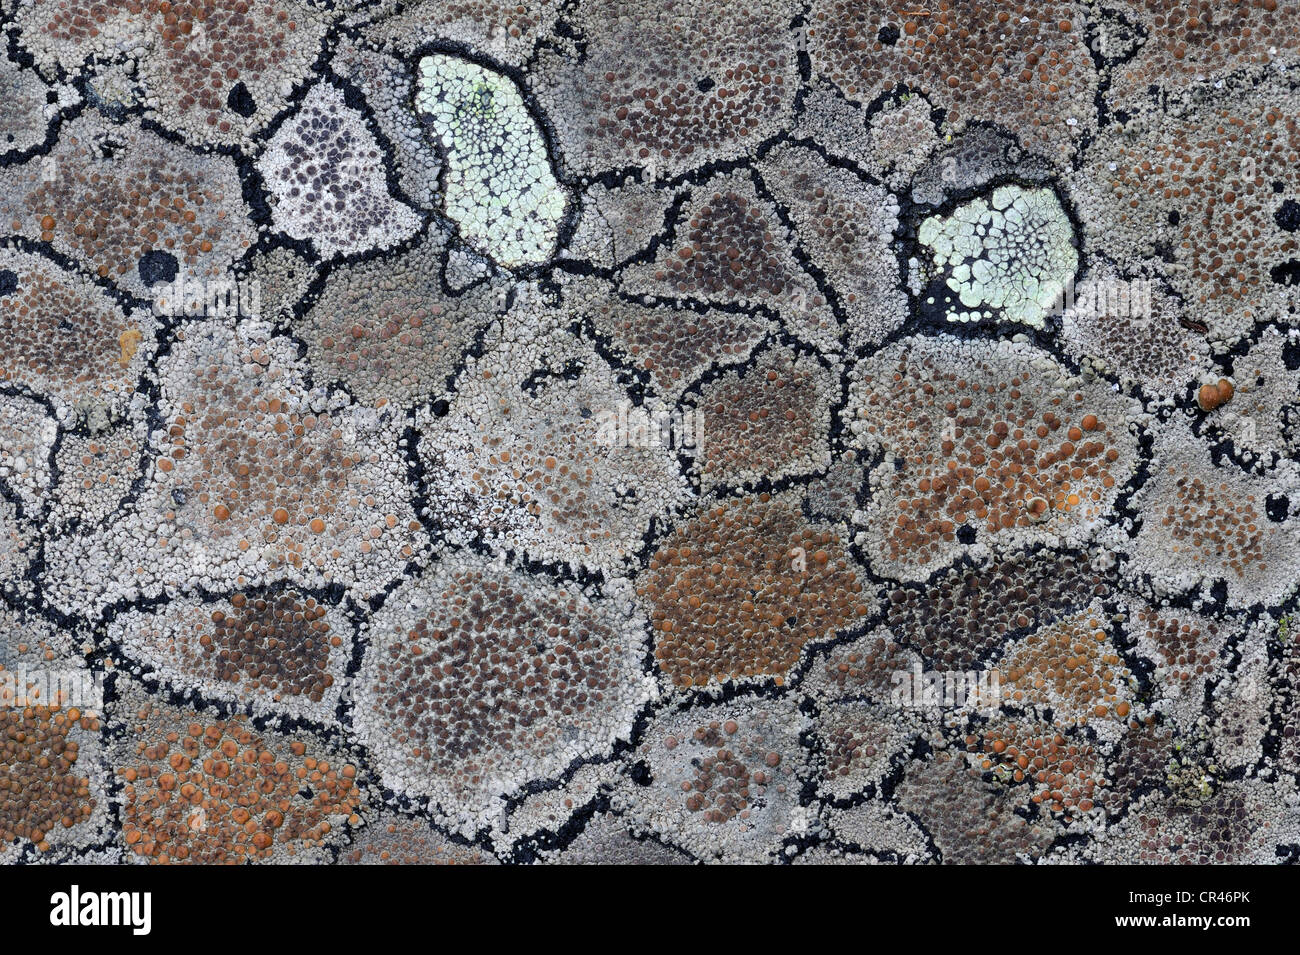 Crustose lichen modelli su pietra, Svezia settentrionale, Scandinavia, Europa Foto Stock